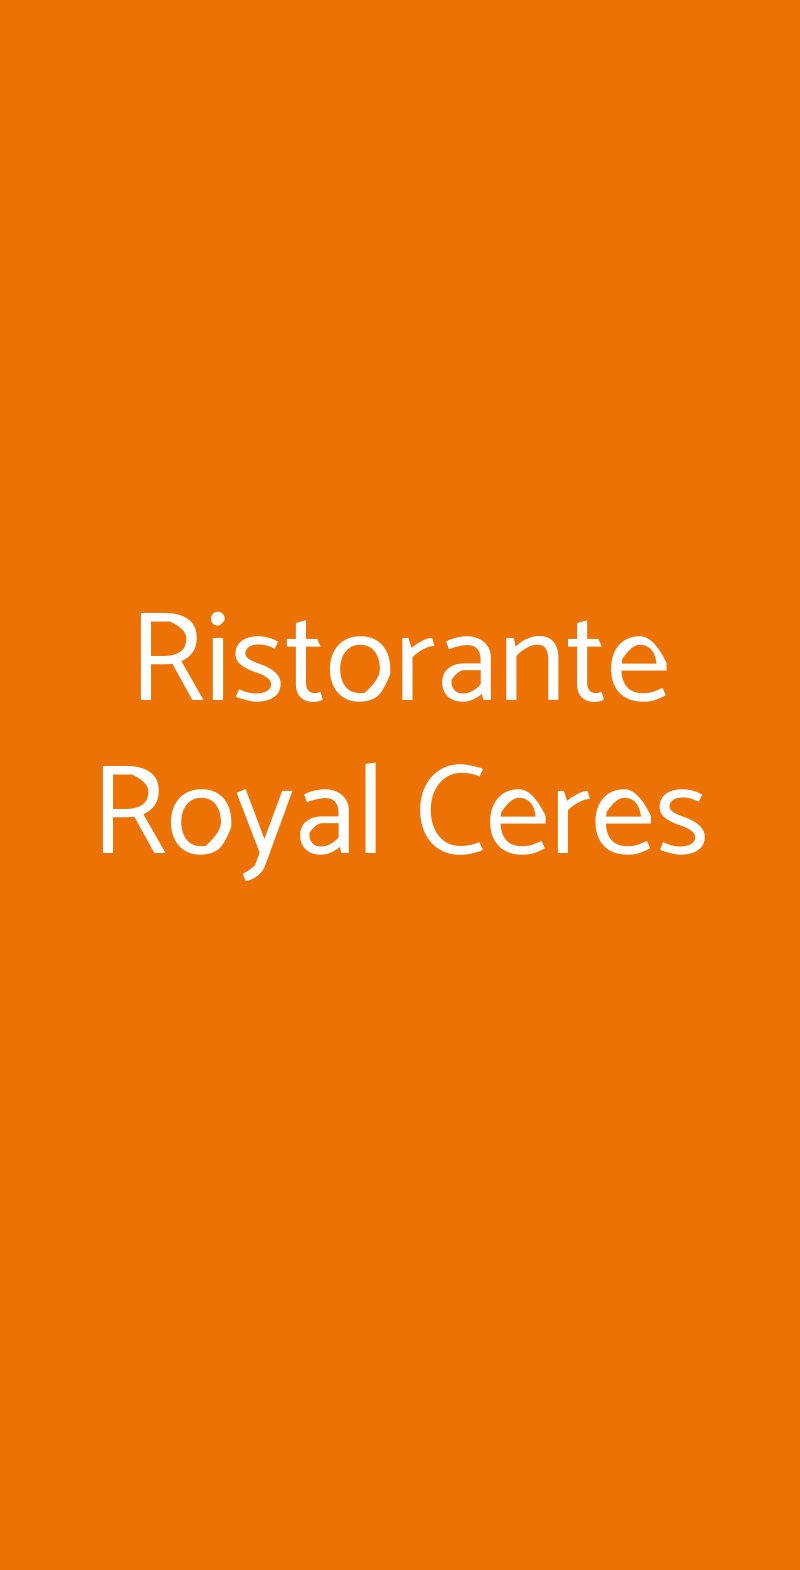 Ristorante Royal Ceres Catania menù 1 pagina